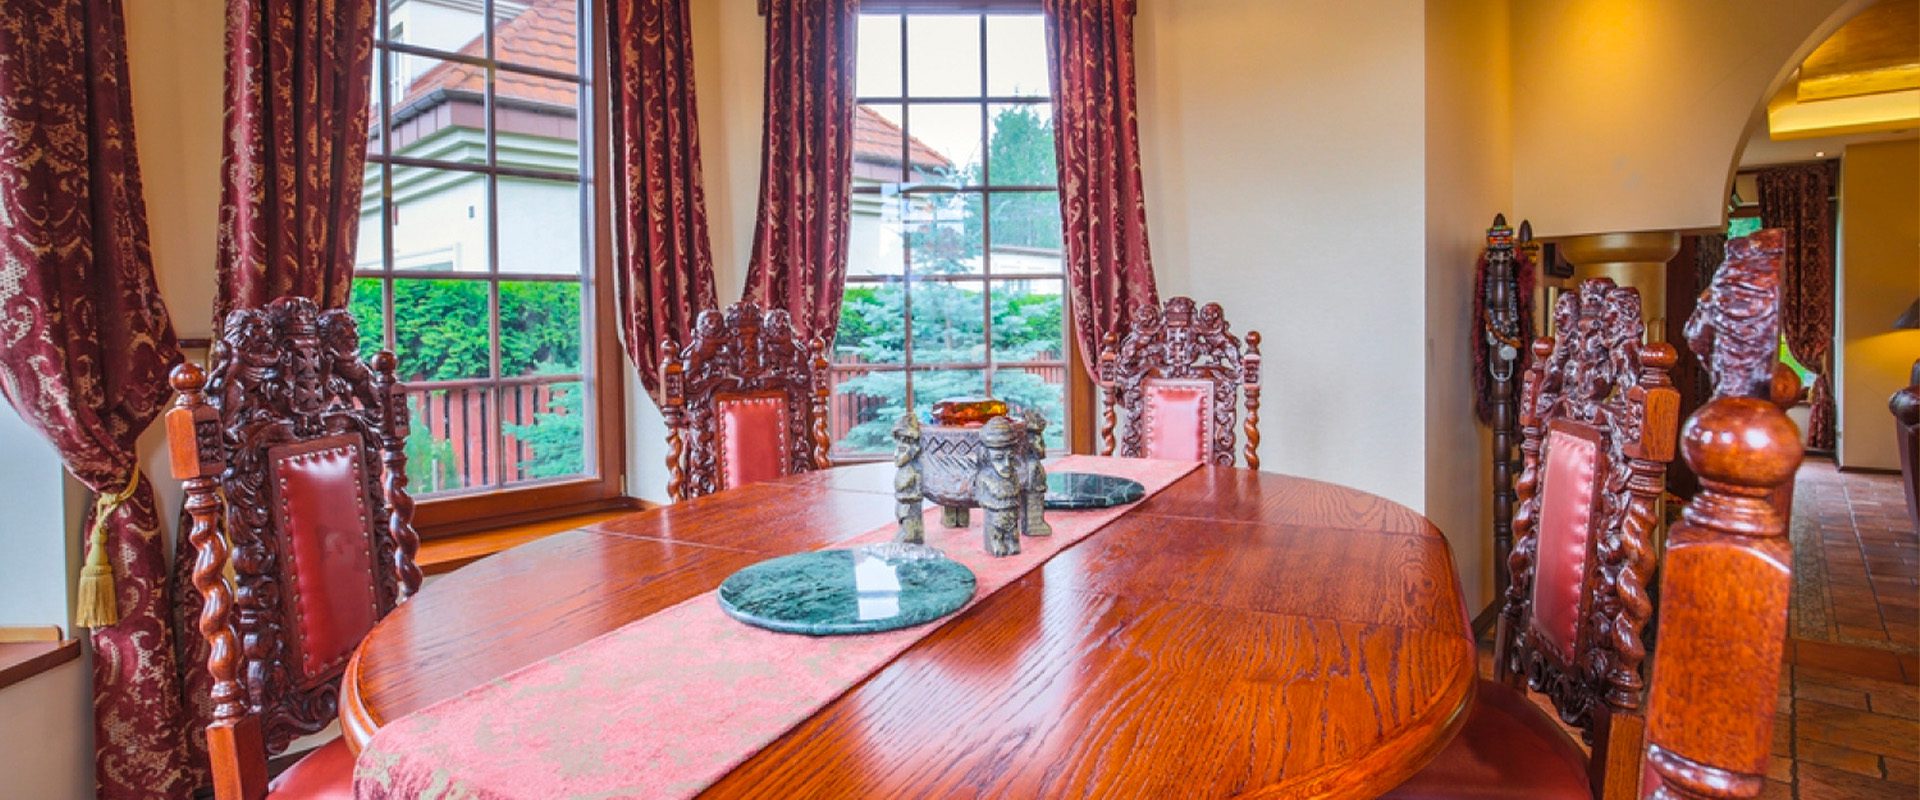 Table de repas avec mobilier rustique